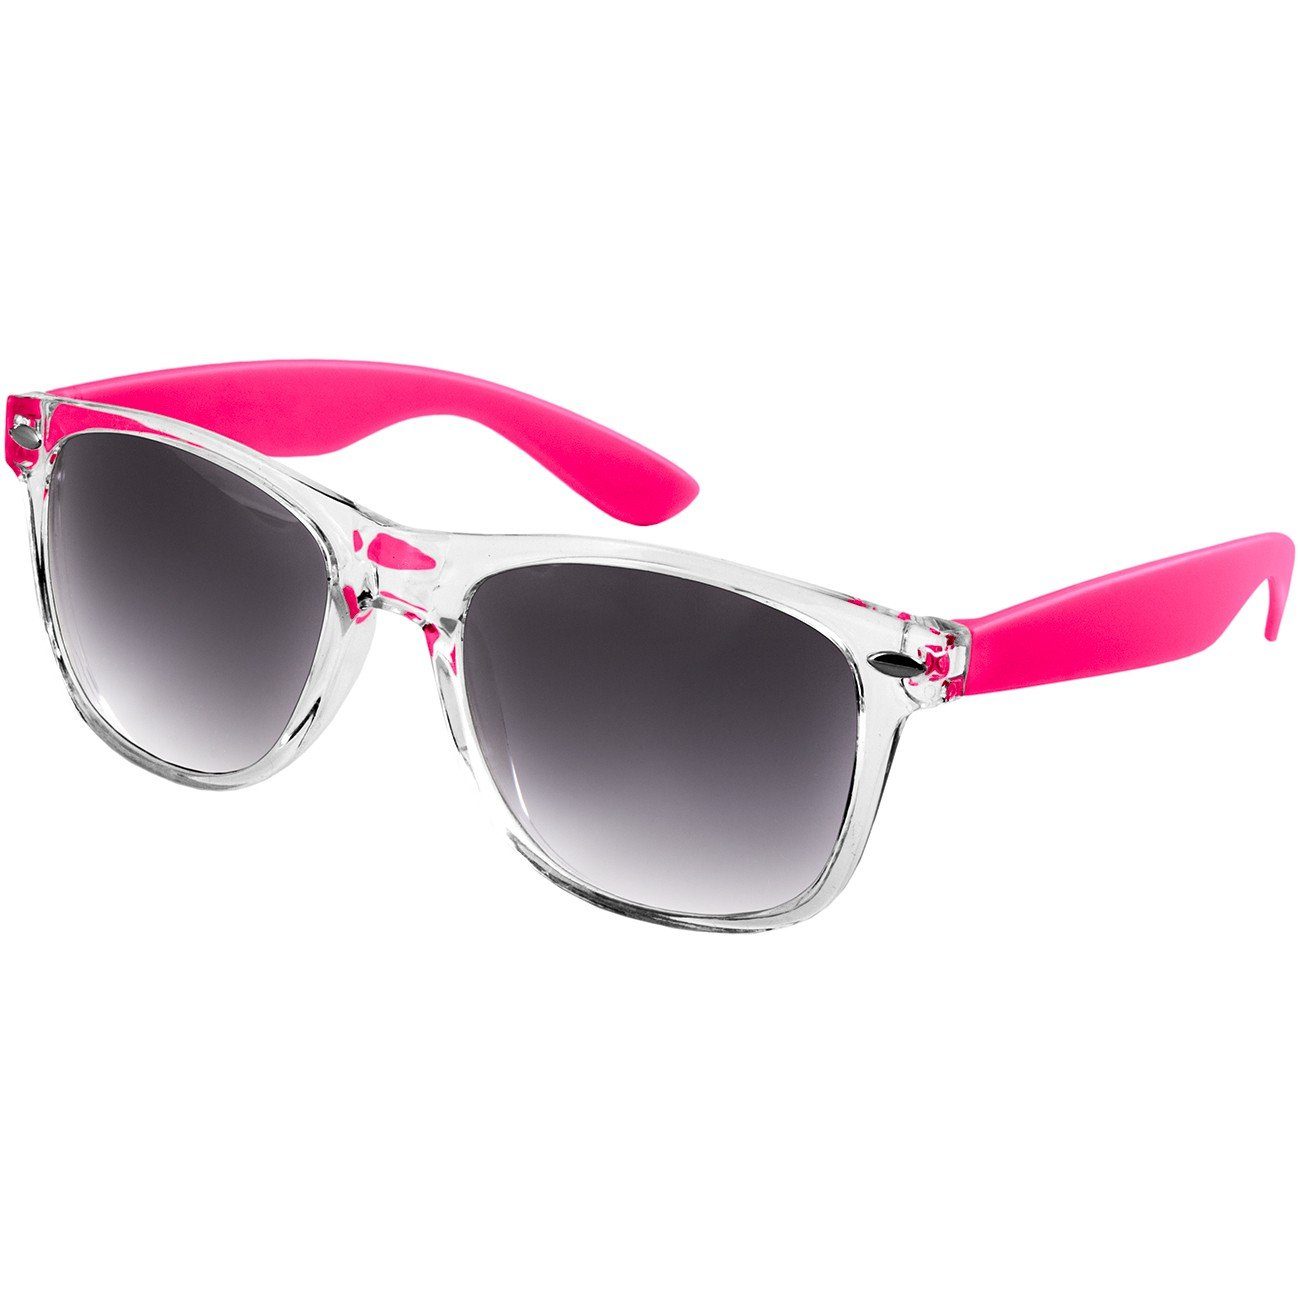 Caspar Sonnenbrille SG017 Damen RETRO Designbrille pink / schwarz getönt